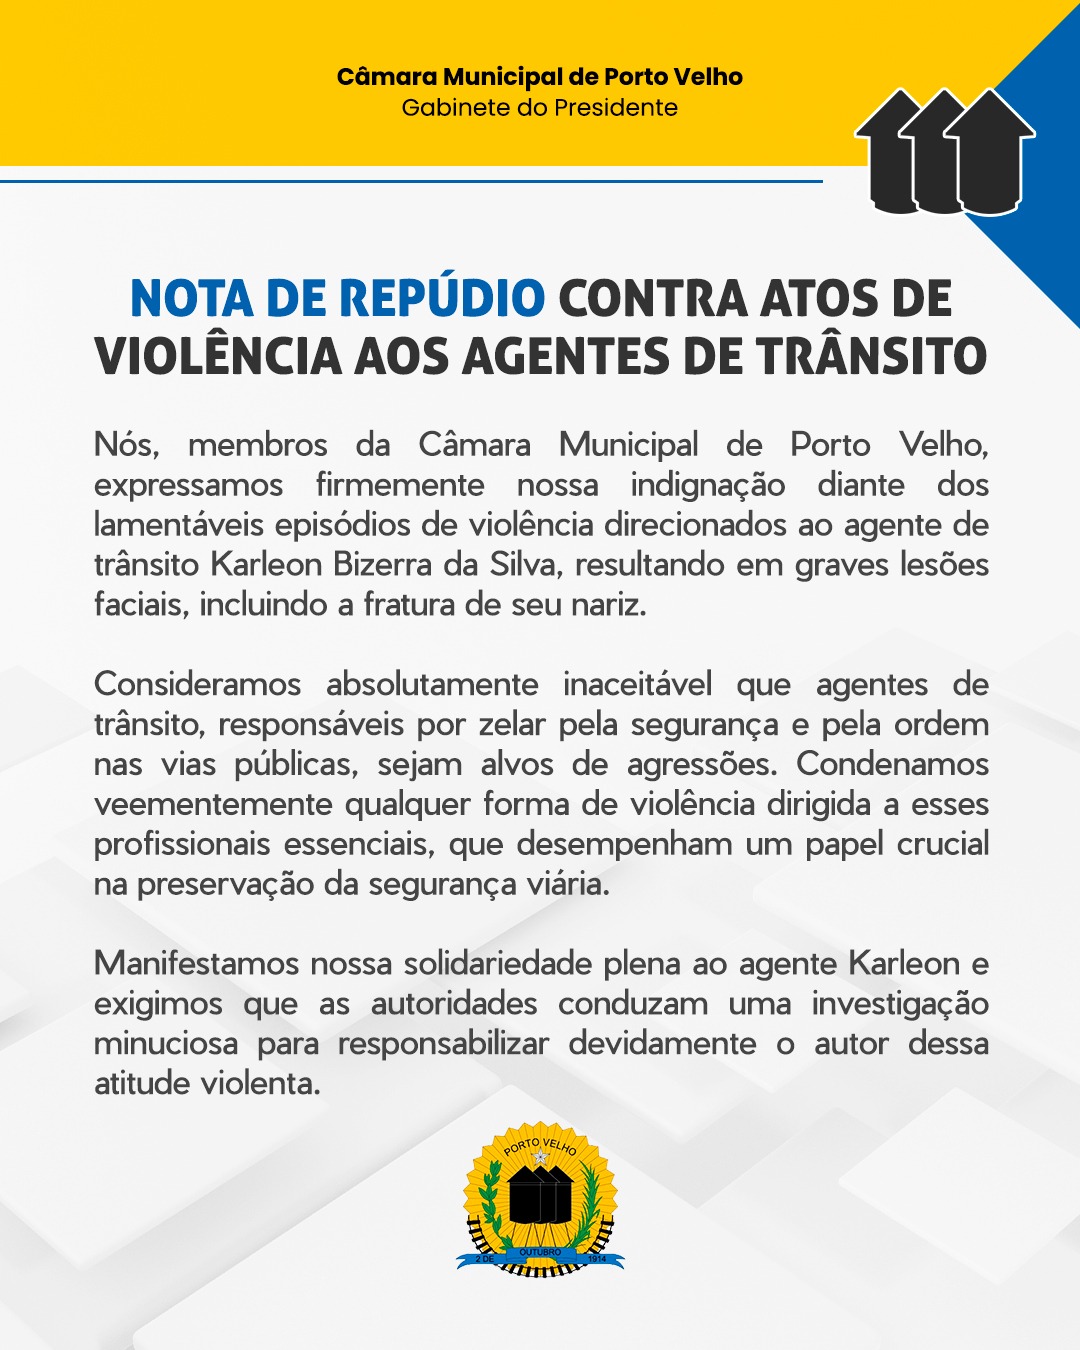 NOTA DE REPÚDIO CONTRA ATOS DE VIOLÊNCIA AOS AGENTES DE TRÂNSITO